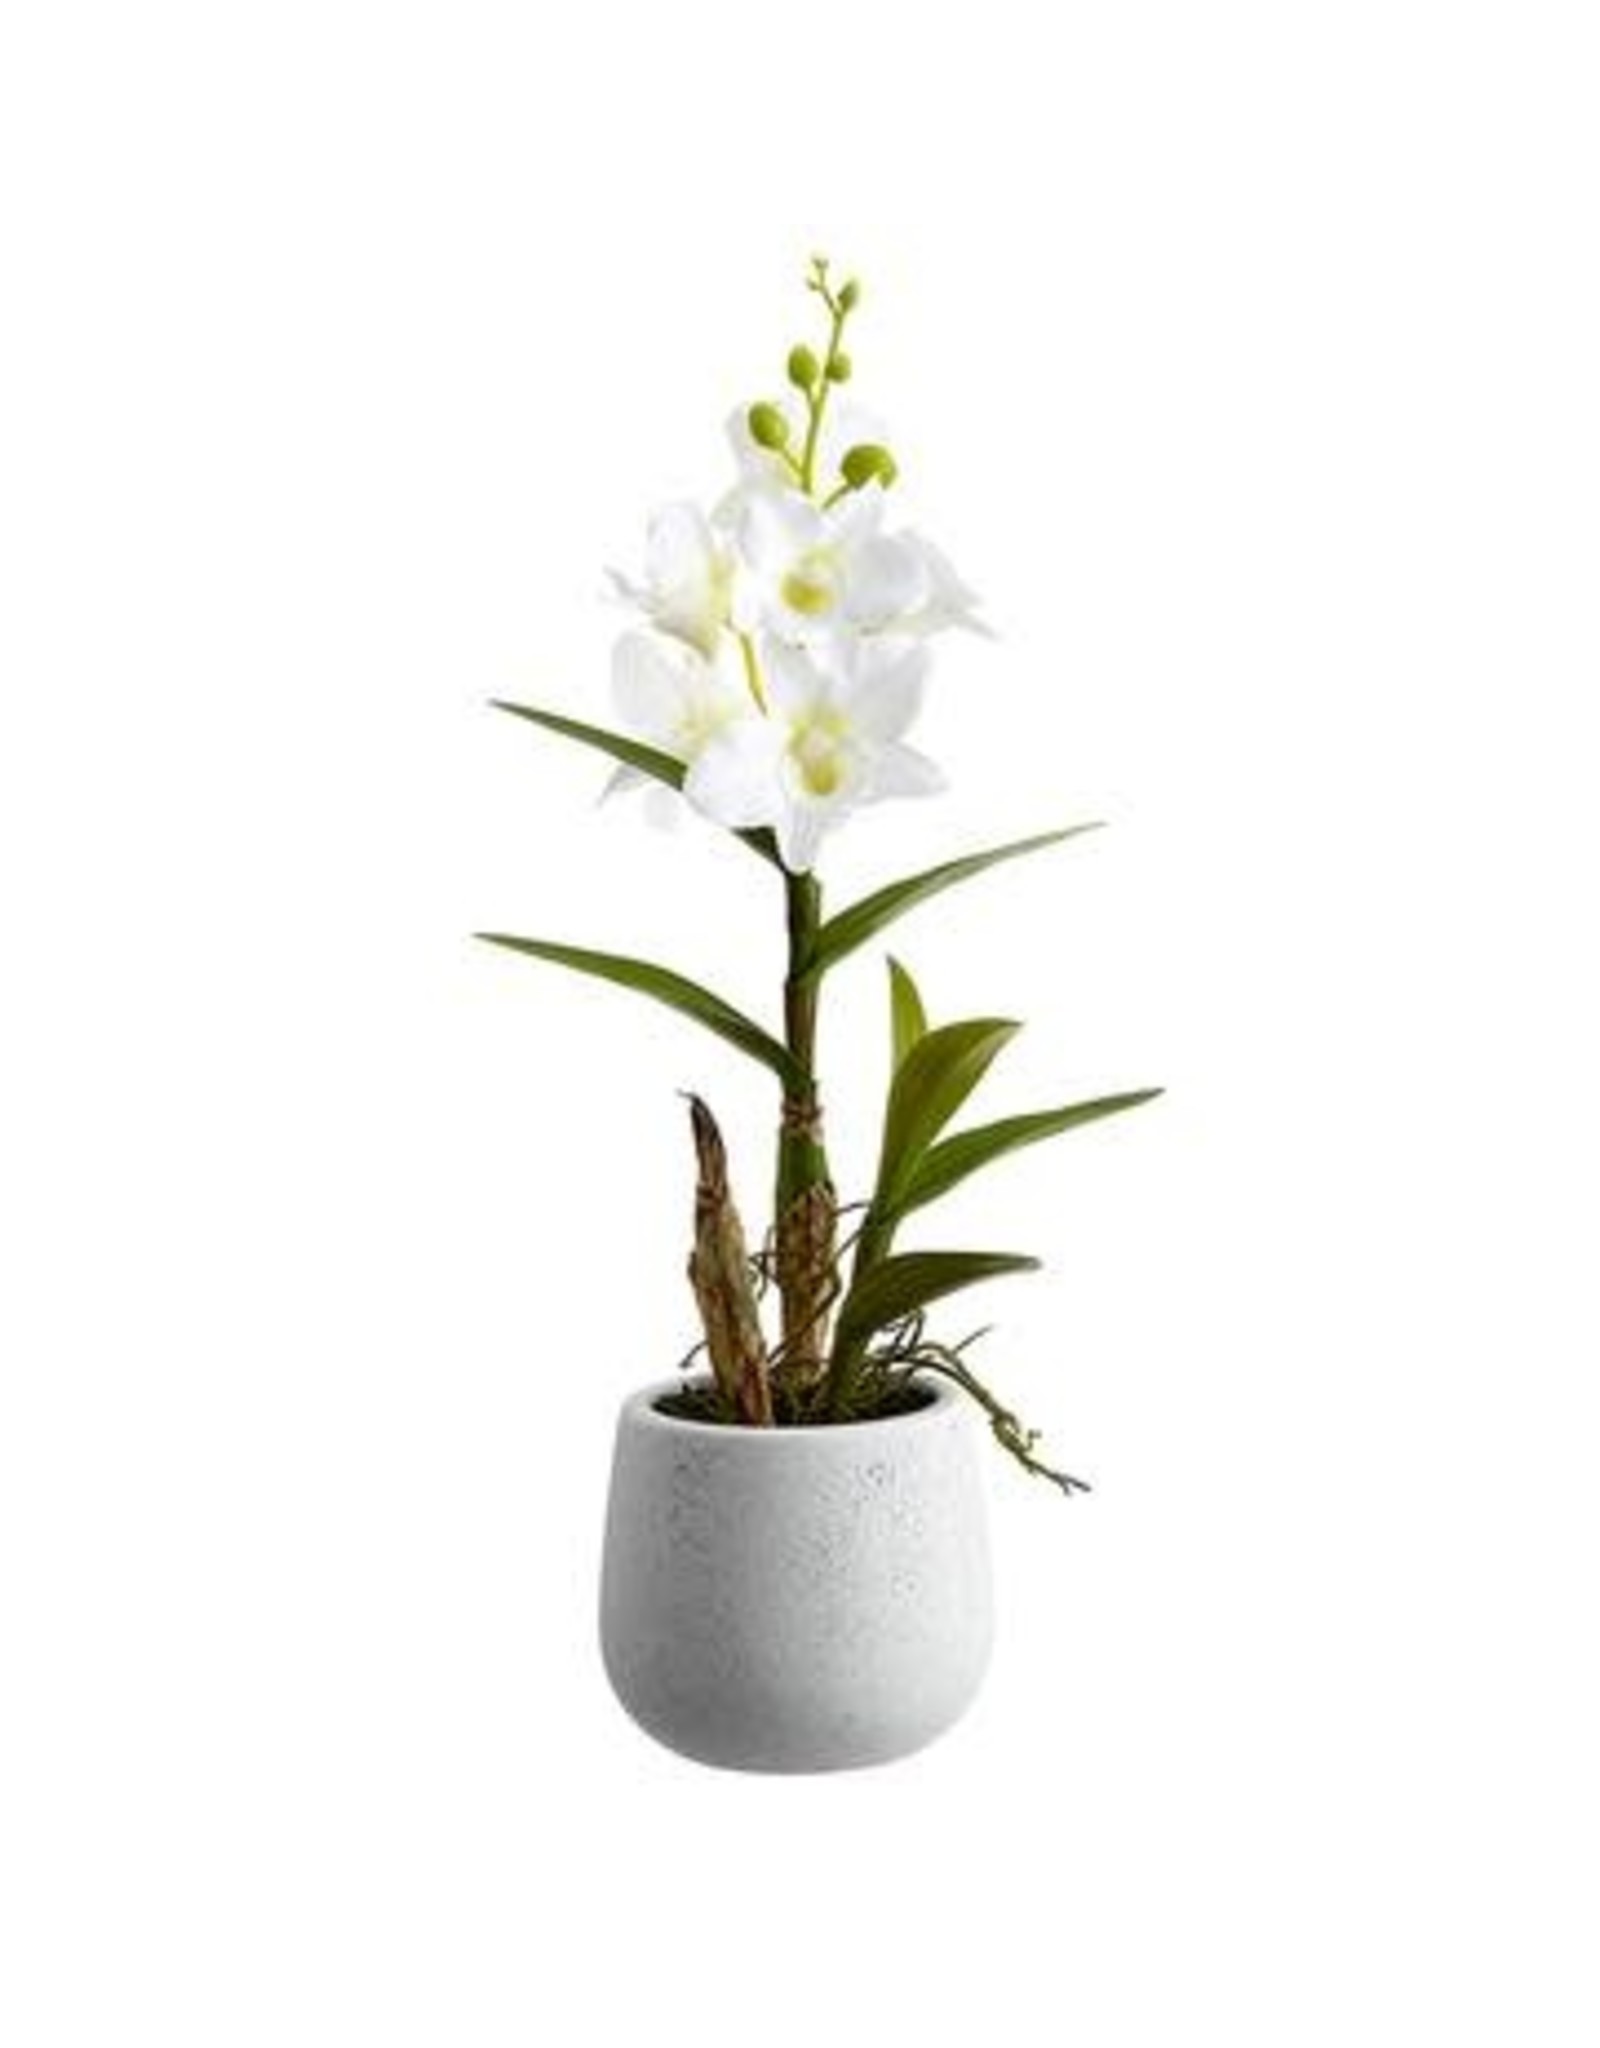 LFO086 15" Dendrobium Orchid Plant in Ceramic Pot